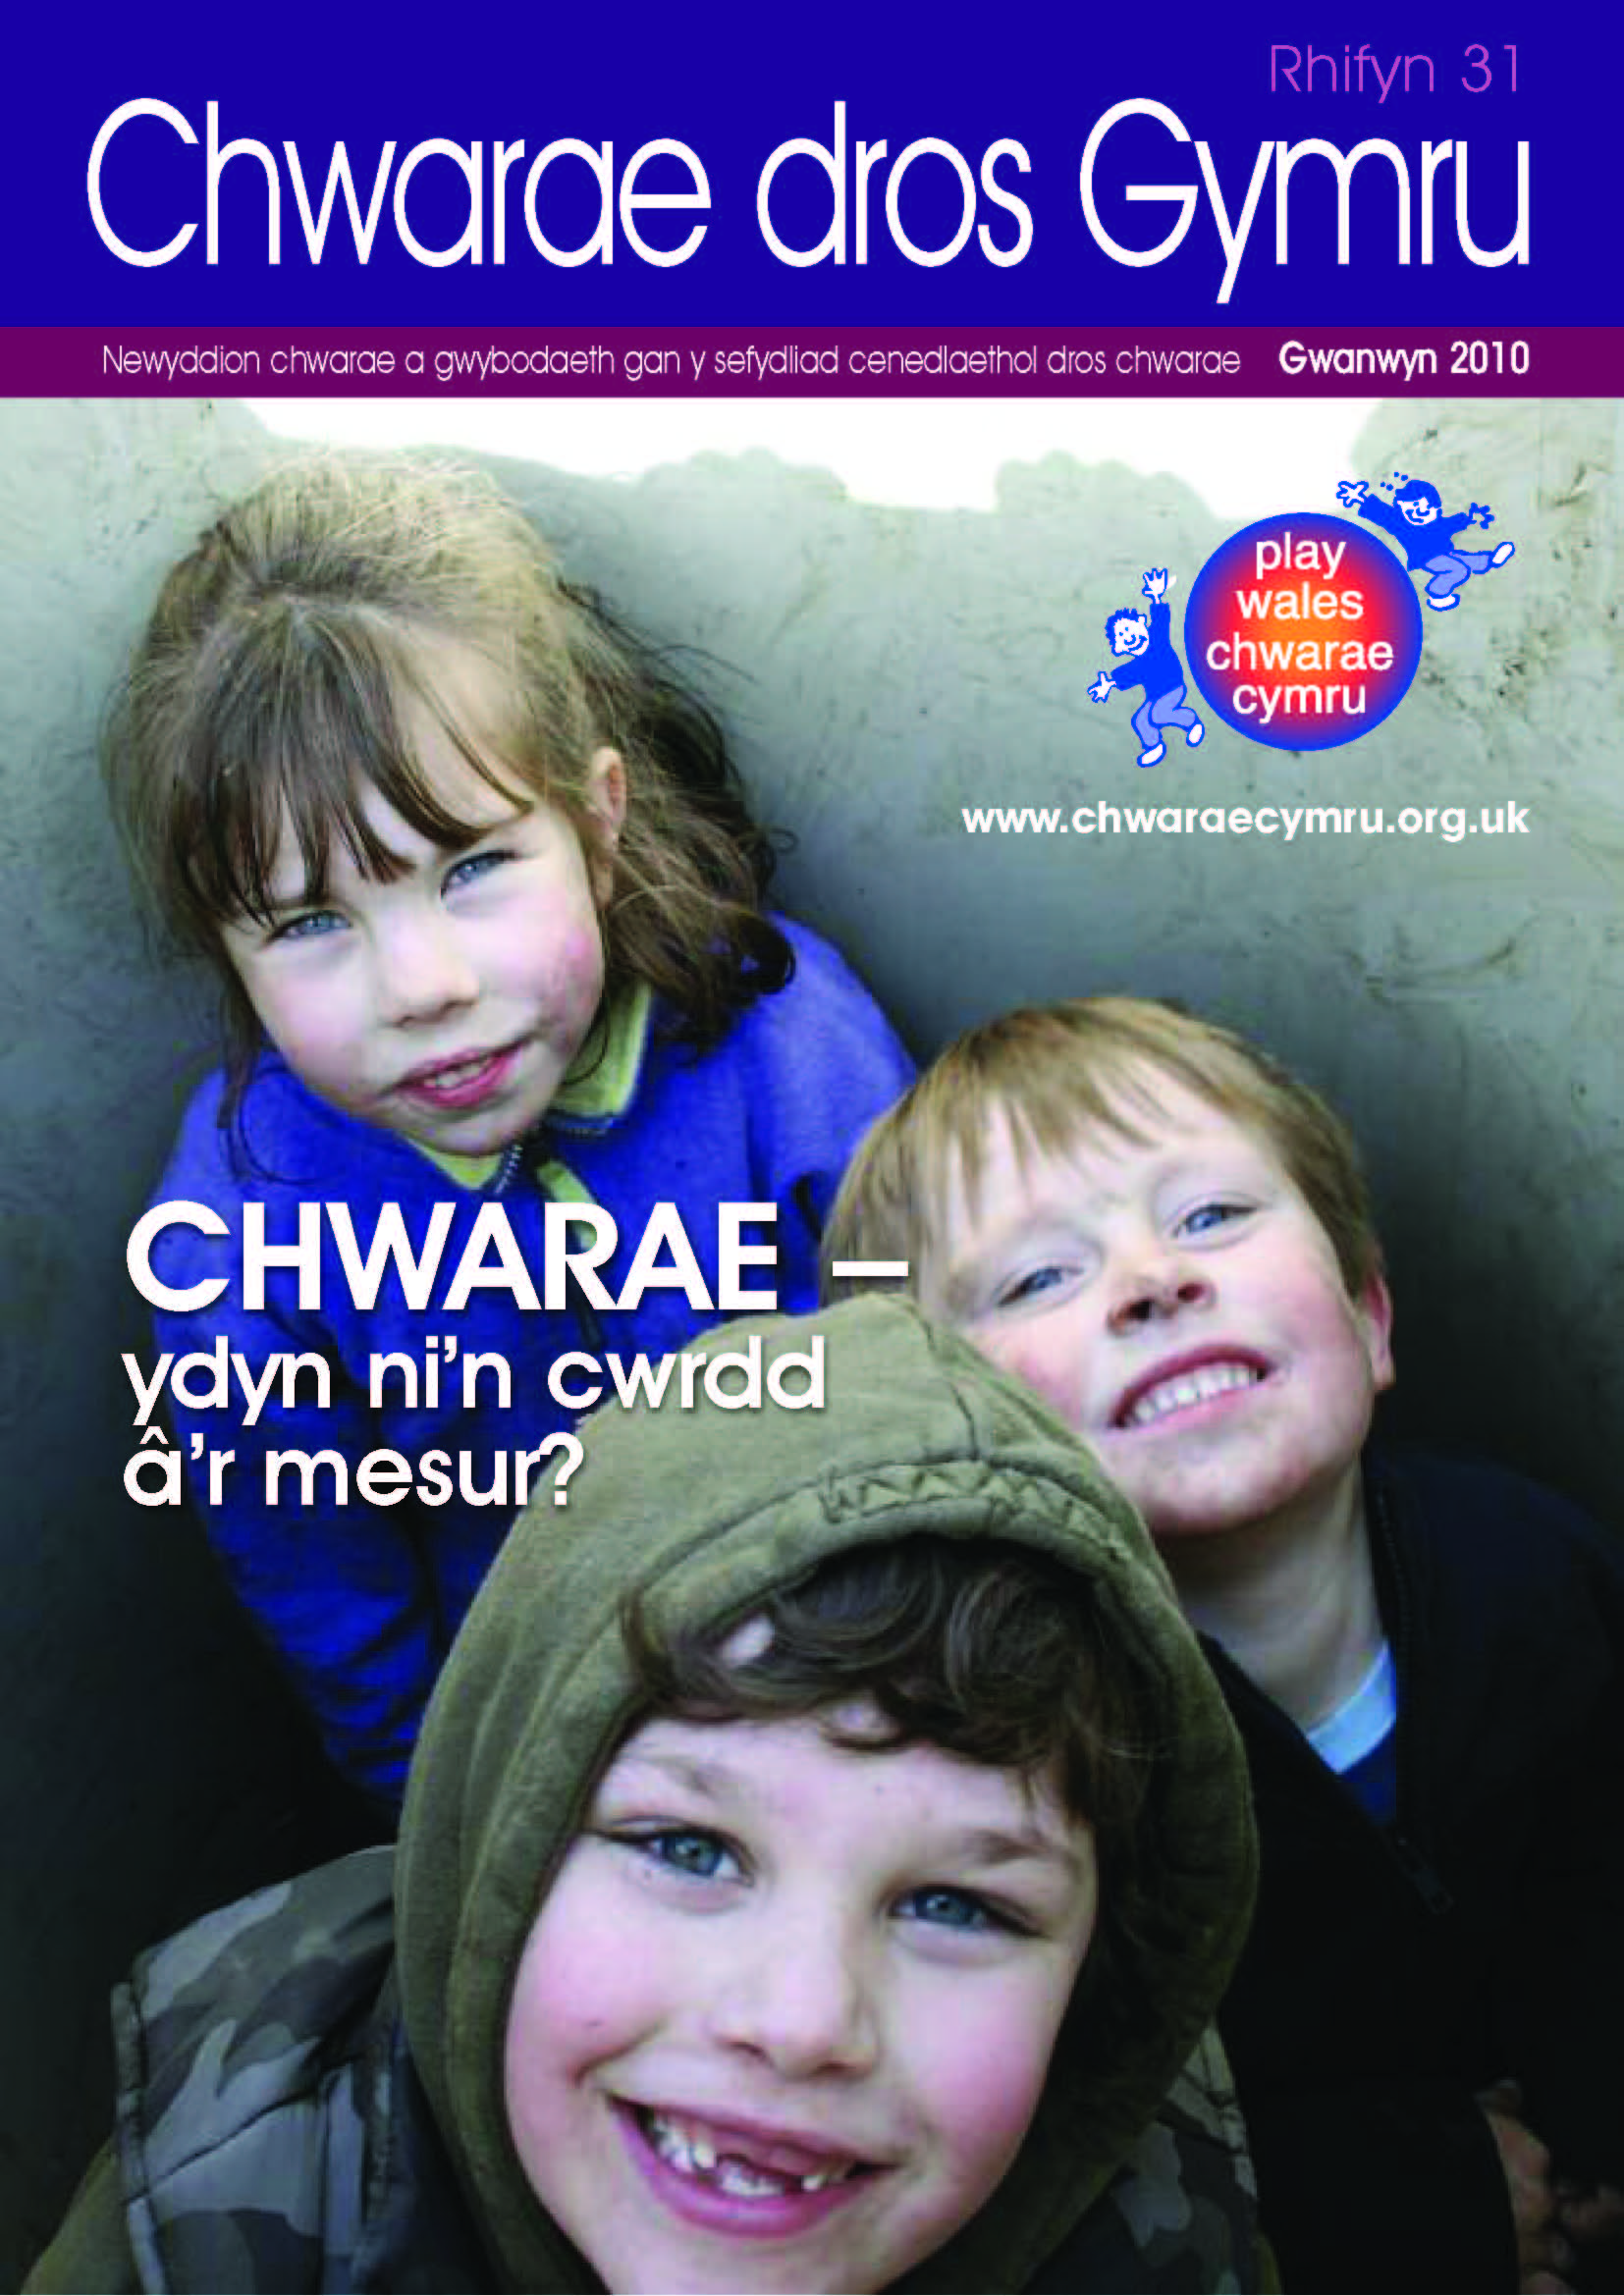 Chwarae dros Gymru – rhifyn 31